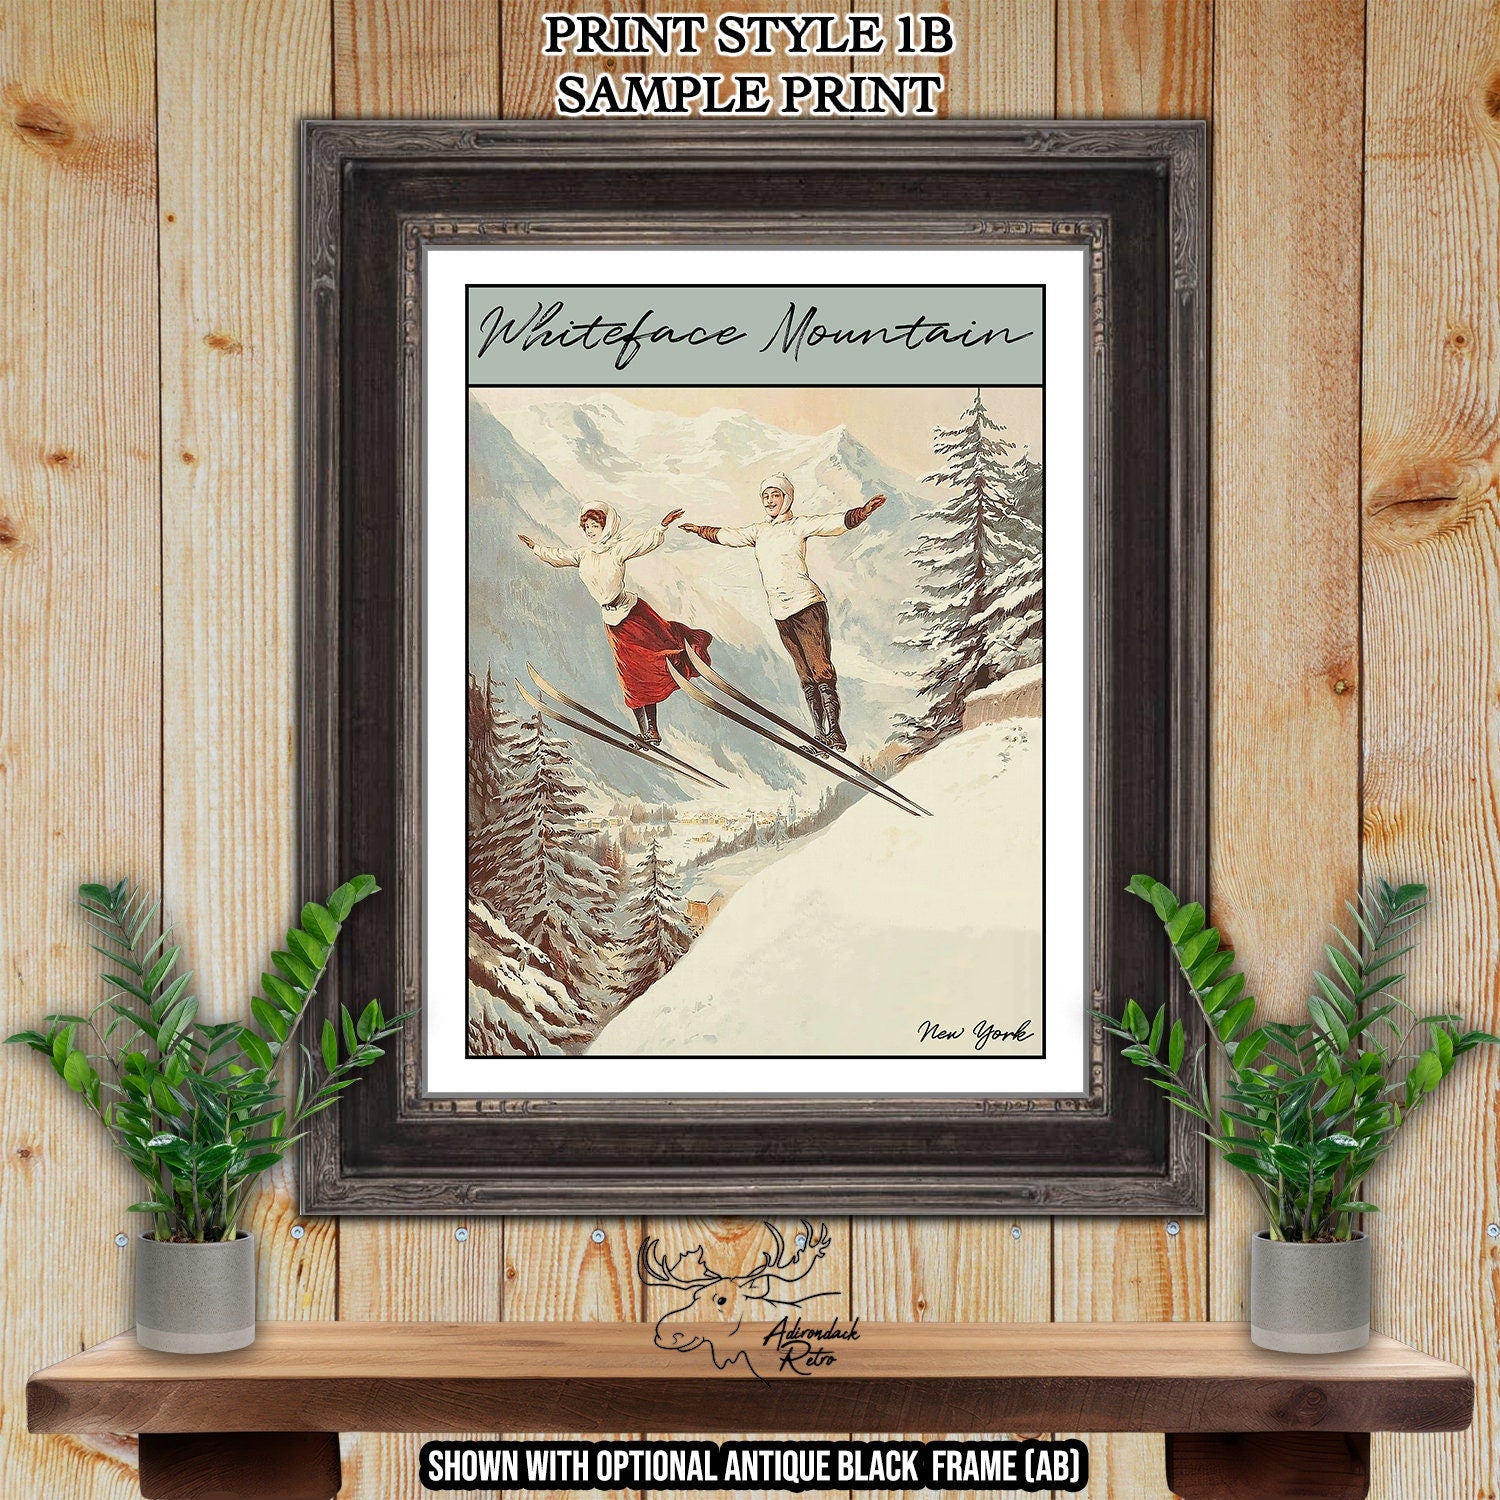 Stratton Mountain Vermont Retro Ski Resort Print